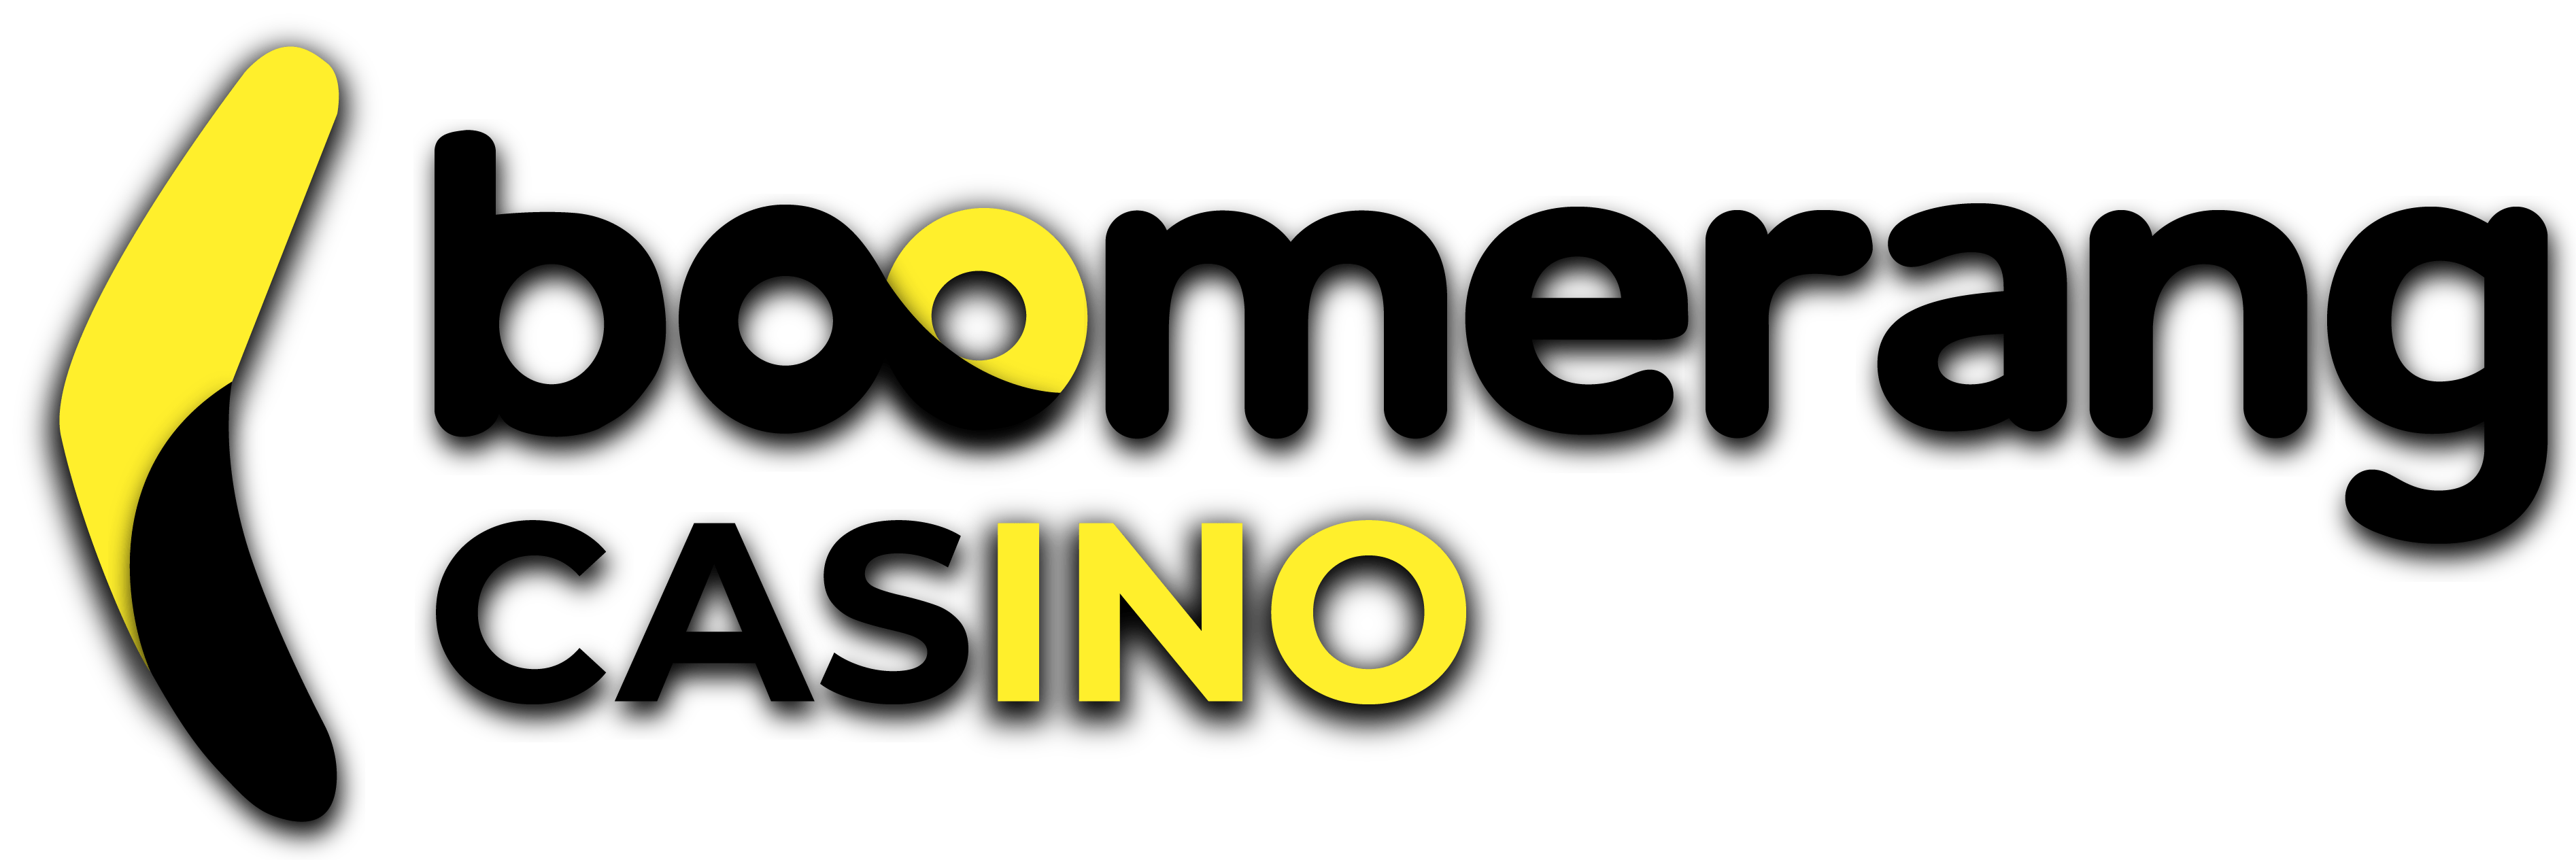 Boomerang Casino online